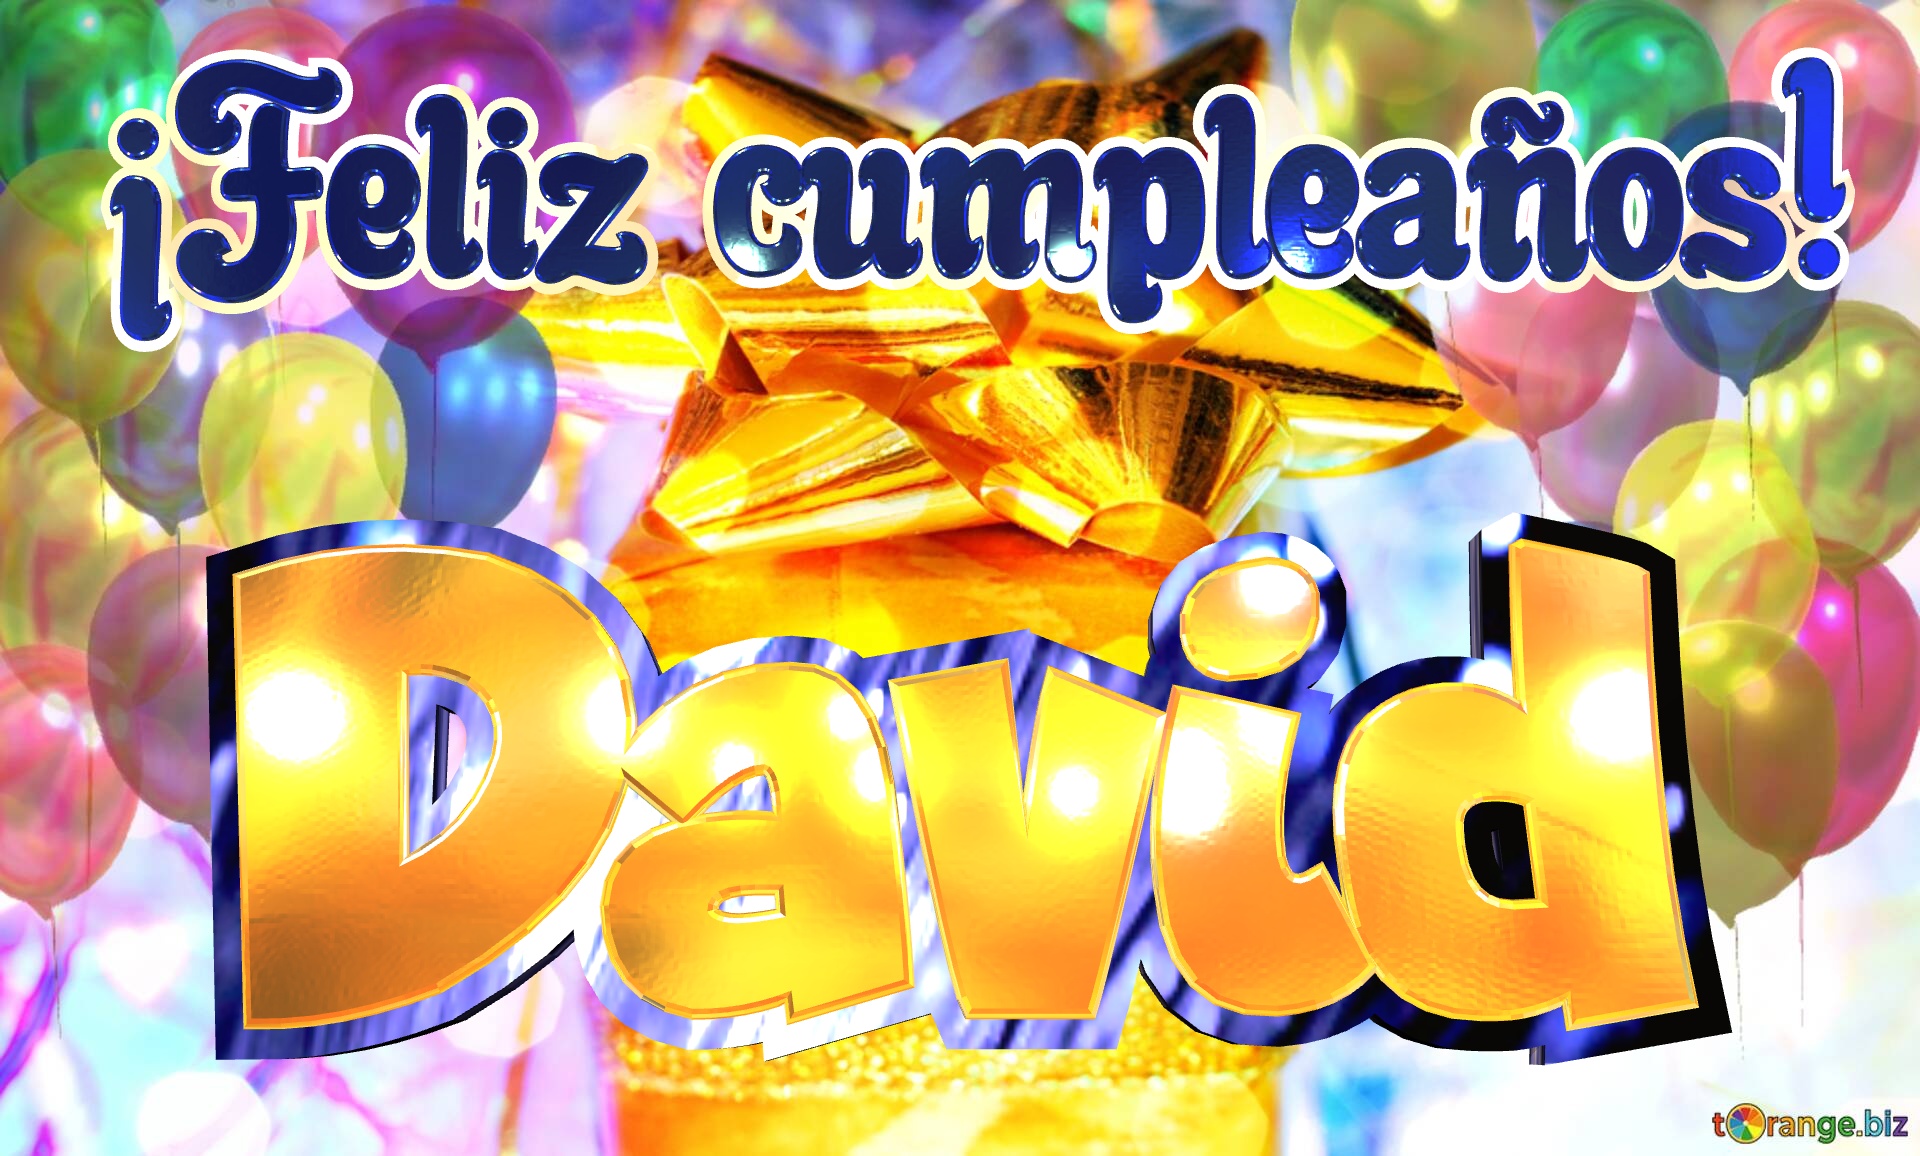 David ¡Feliz cumpleaños! Fondo para felicitaciones por tu cumpleaños. №0